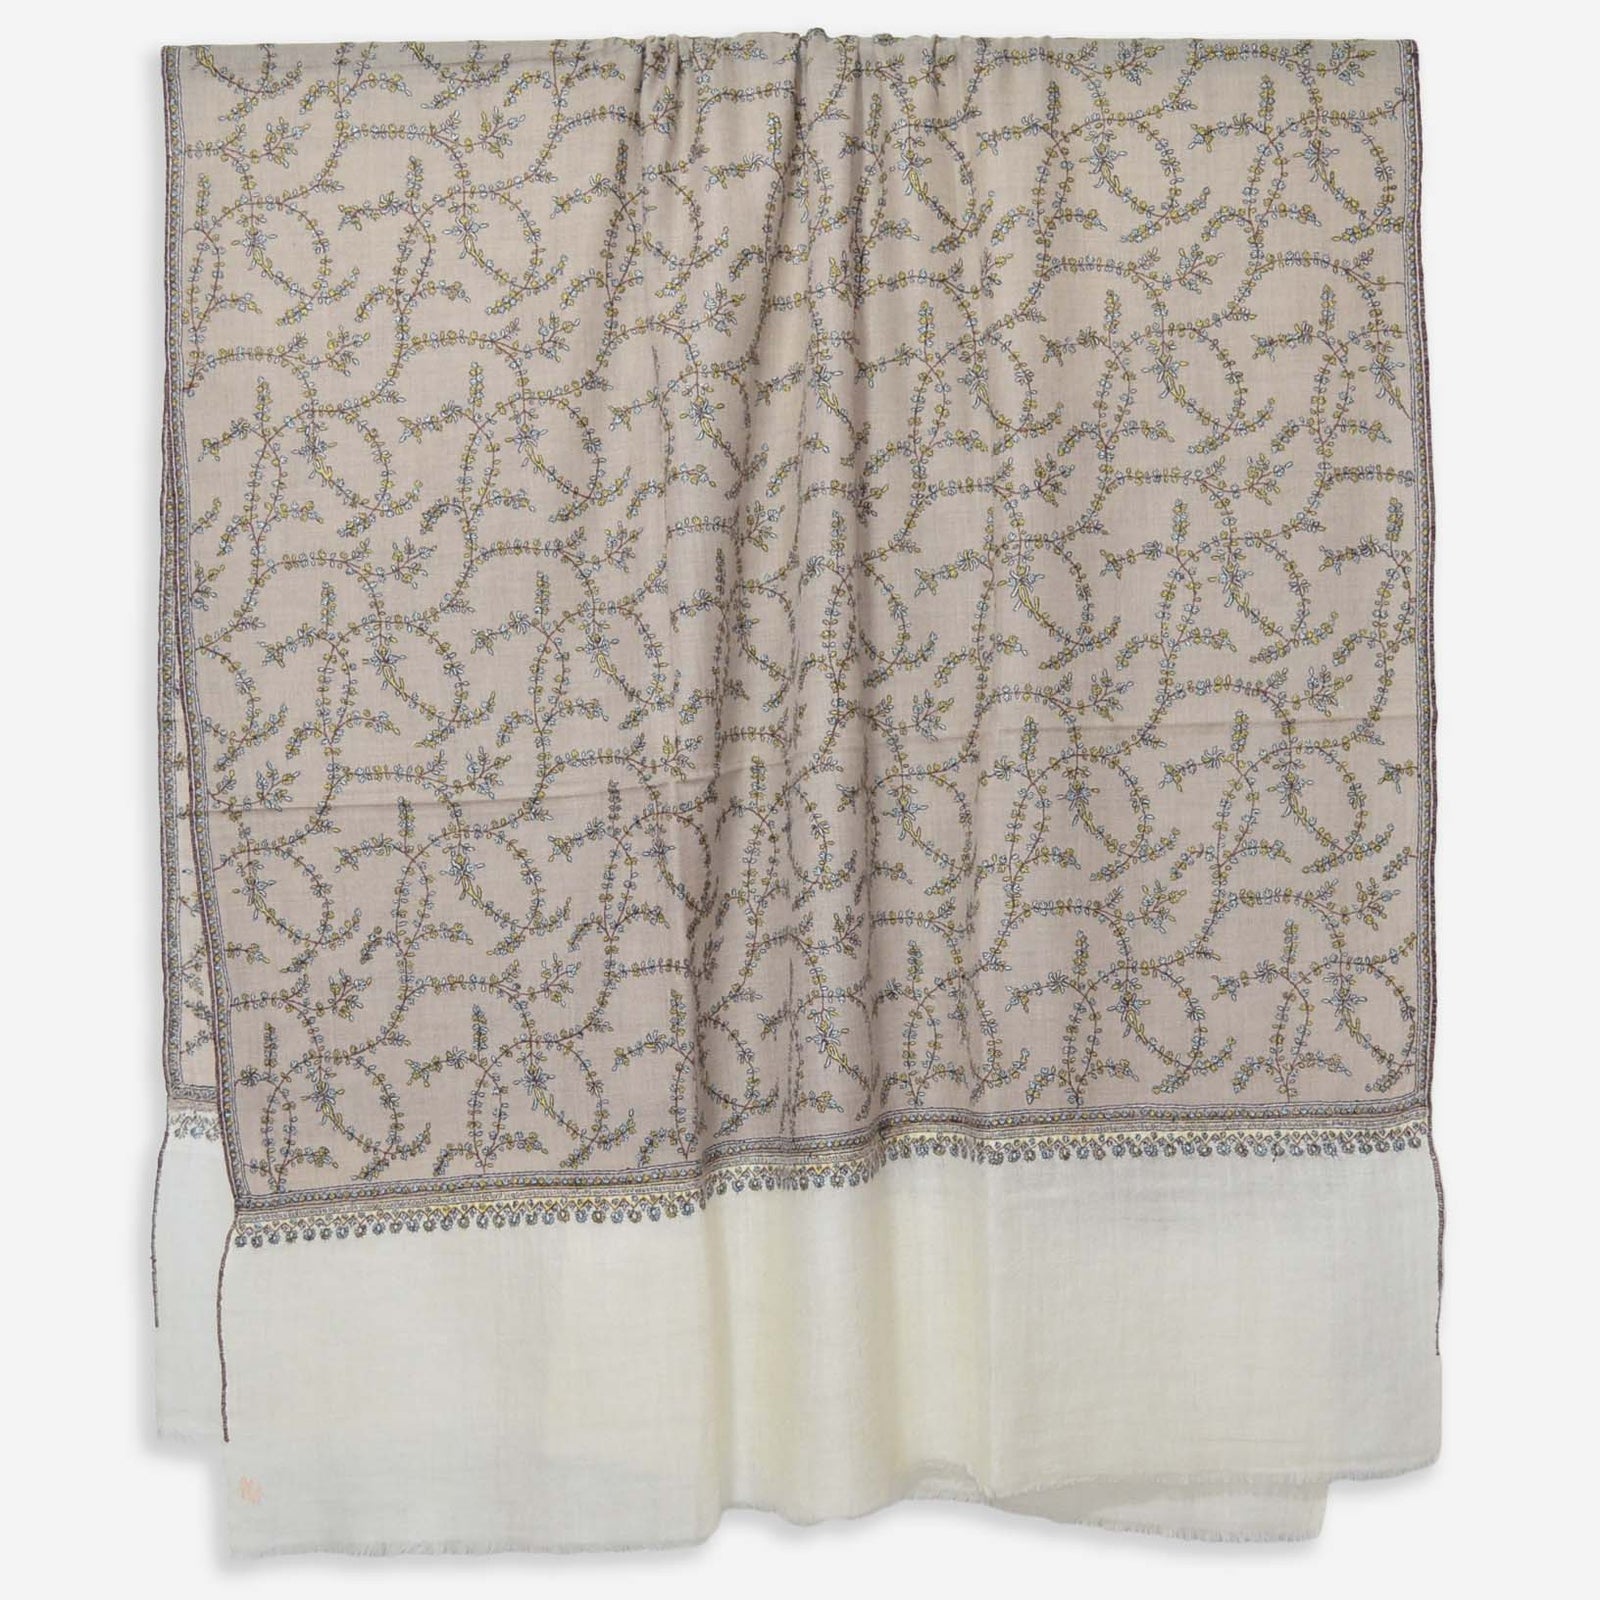 dual tone jali embroidery pashmina shawl